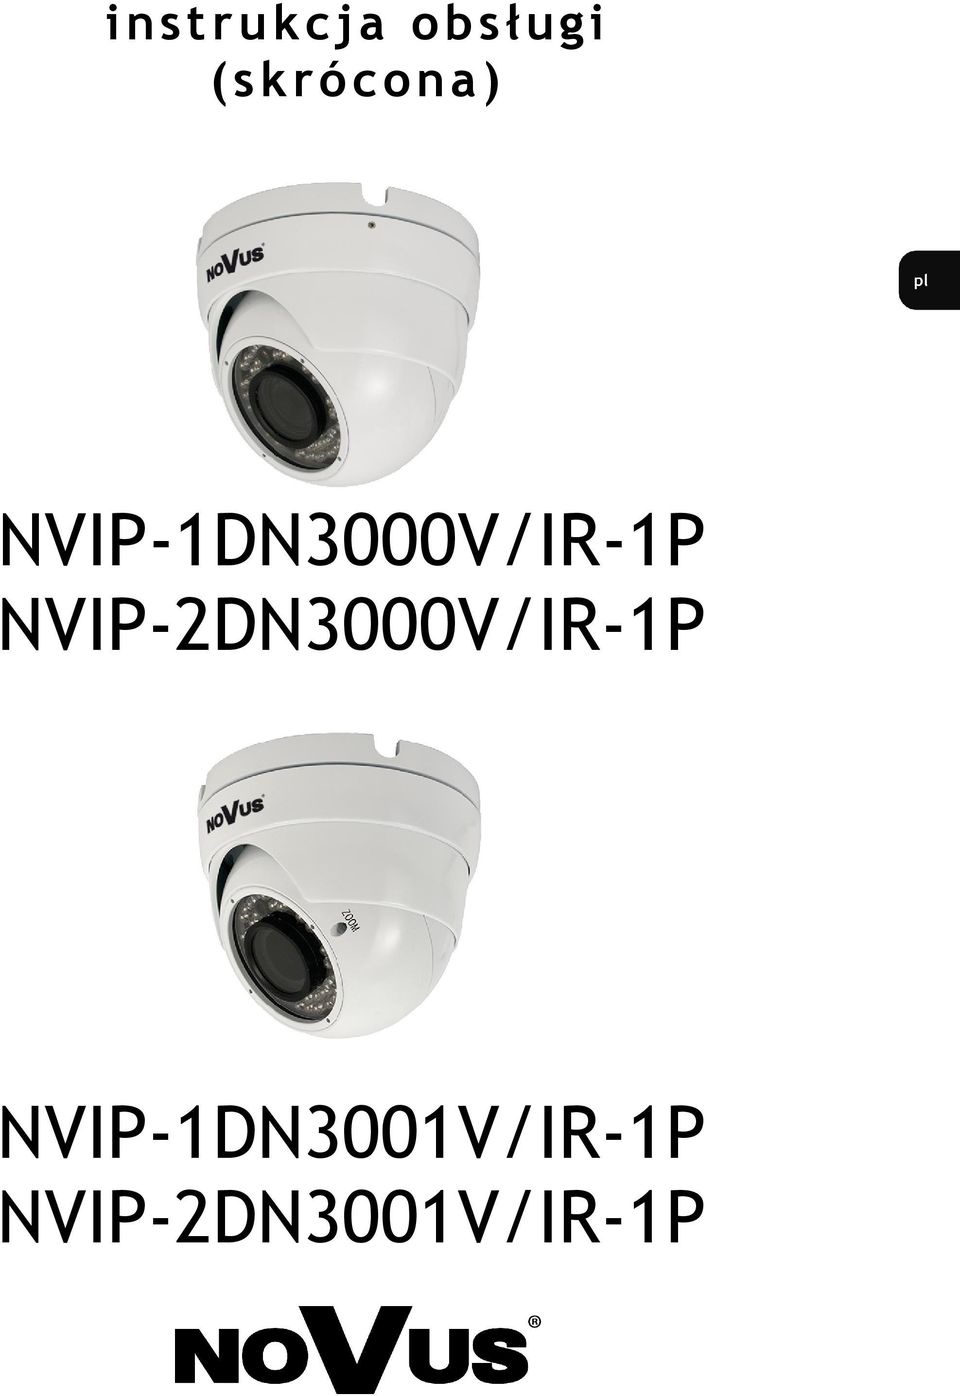 NVIP-1DN3000V/IR-1P